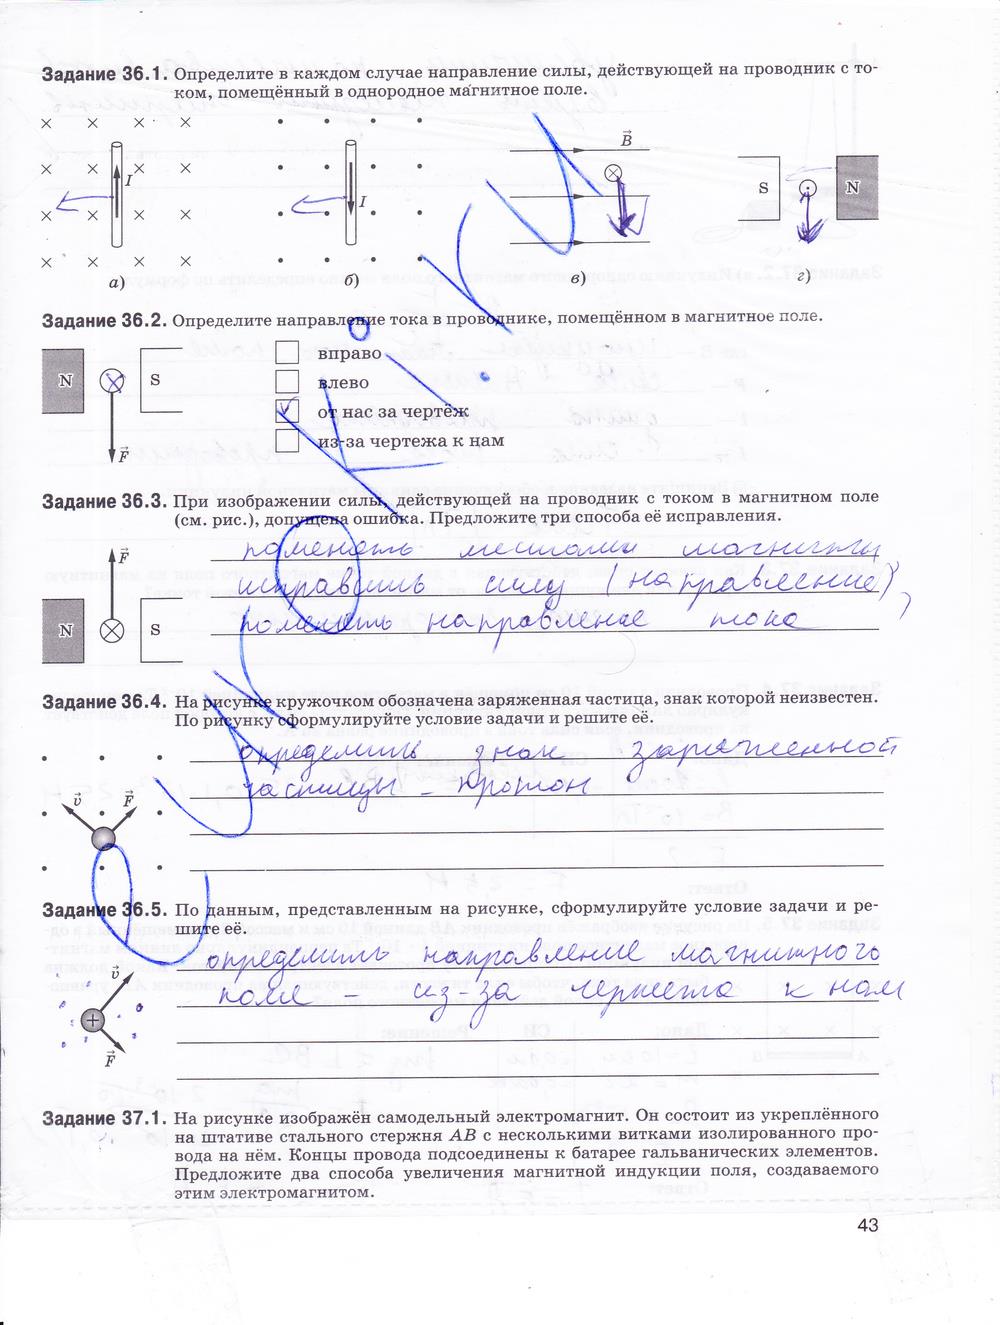 гдз 9 класс рабочая тетрадь страница 43 физика Гутник, Власова